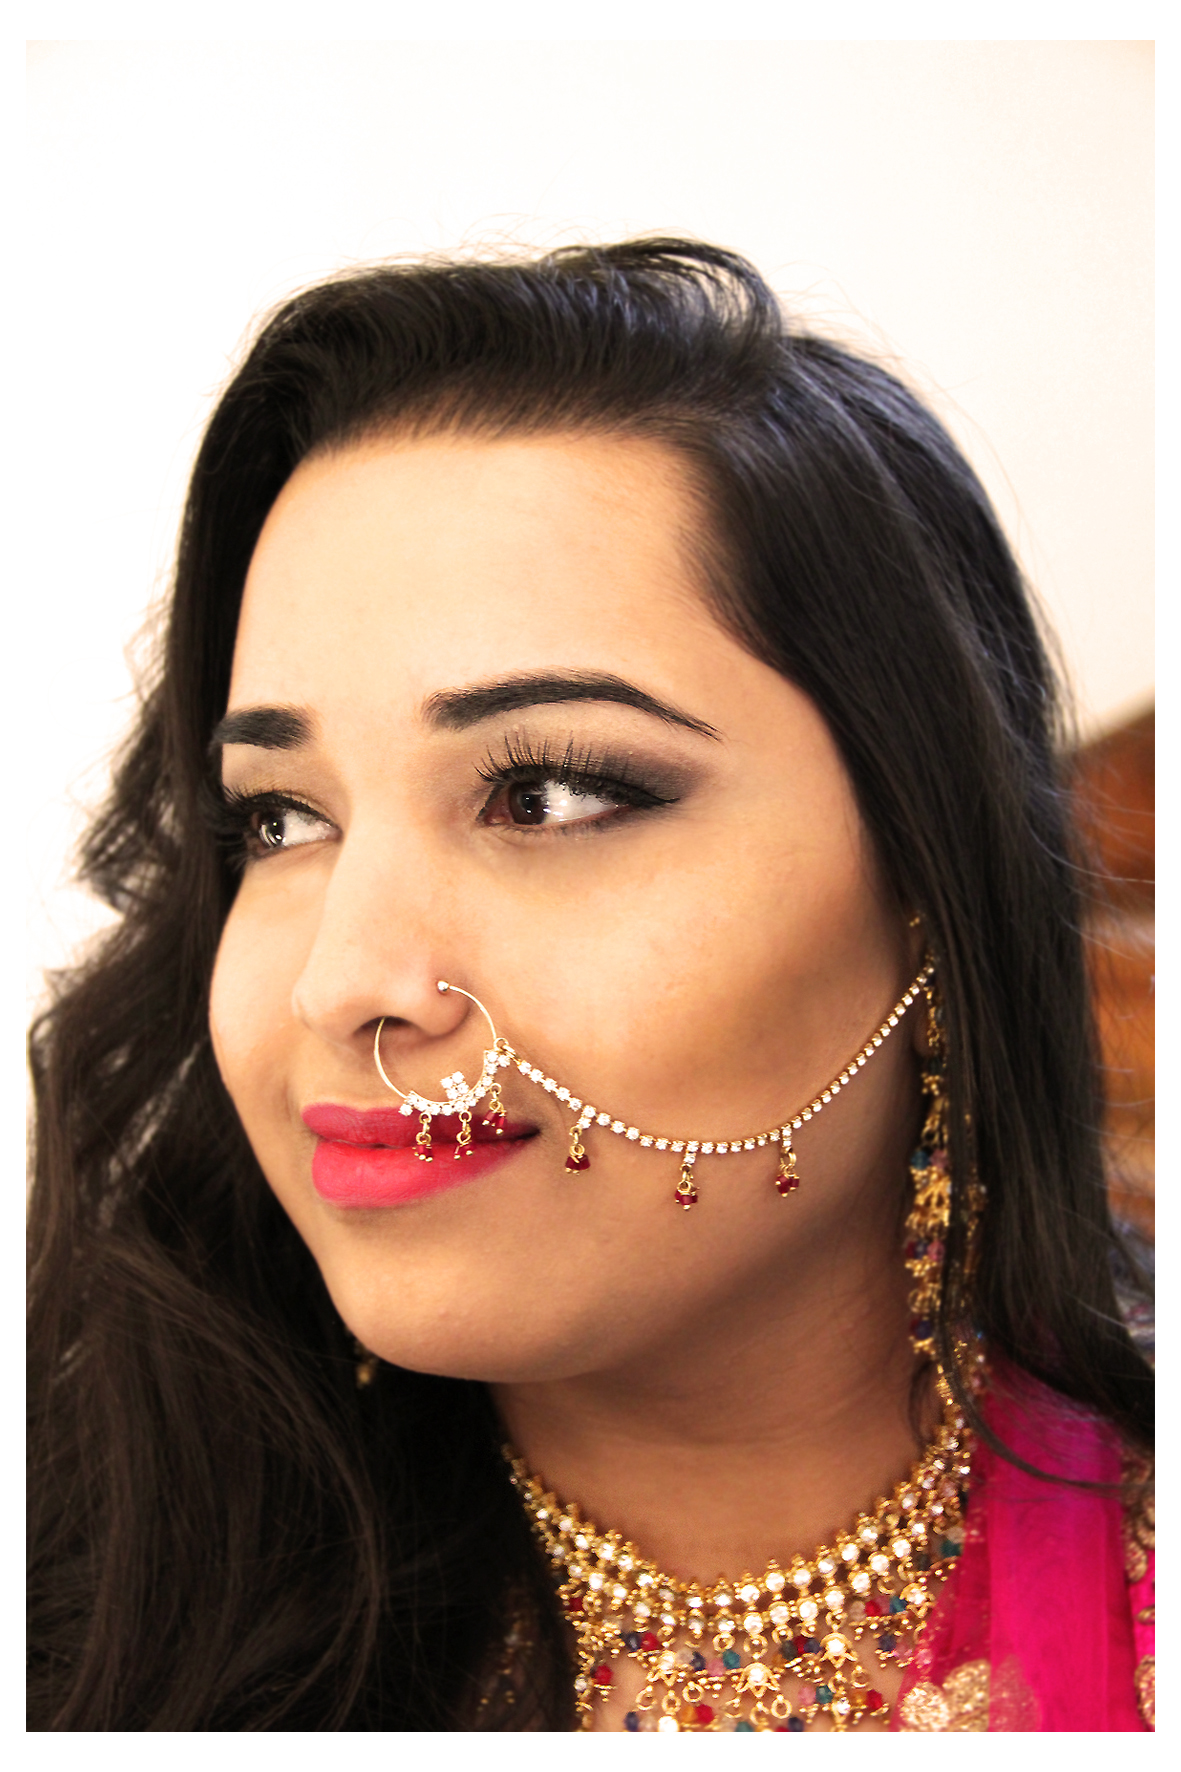 Beispiel indisches Braut Make-up